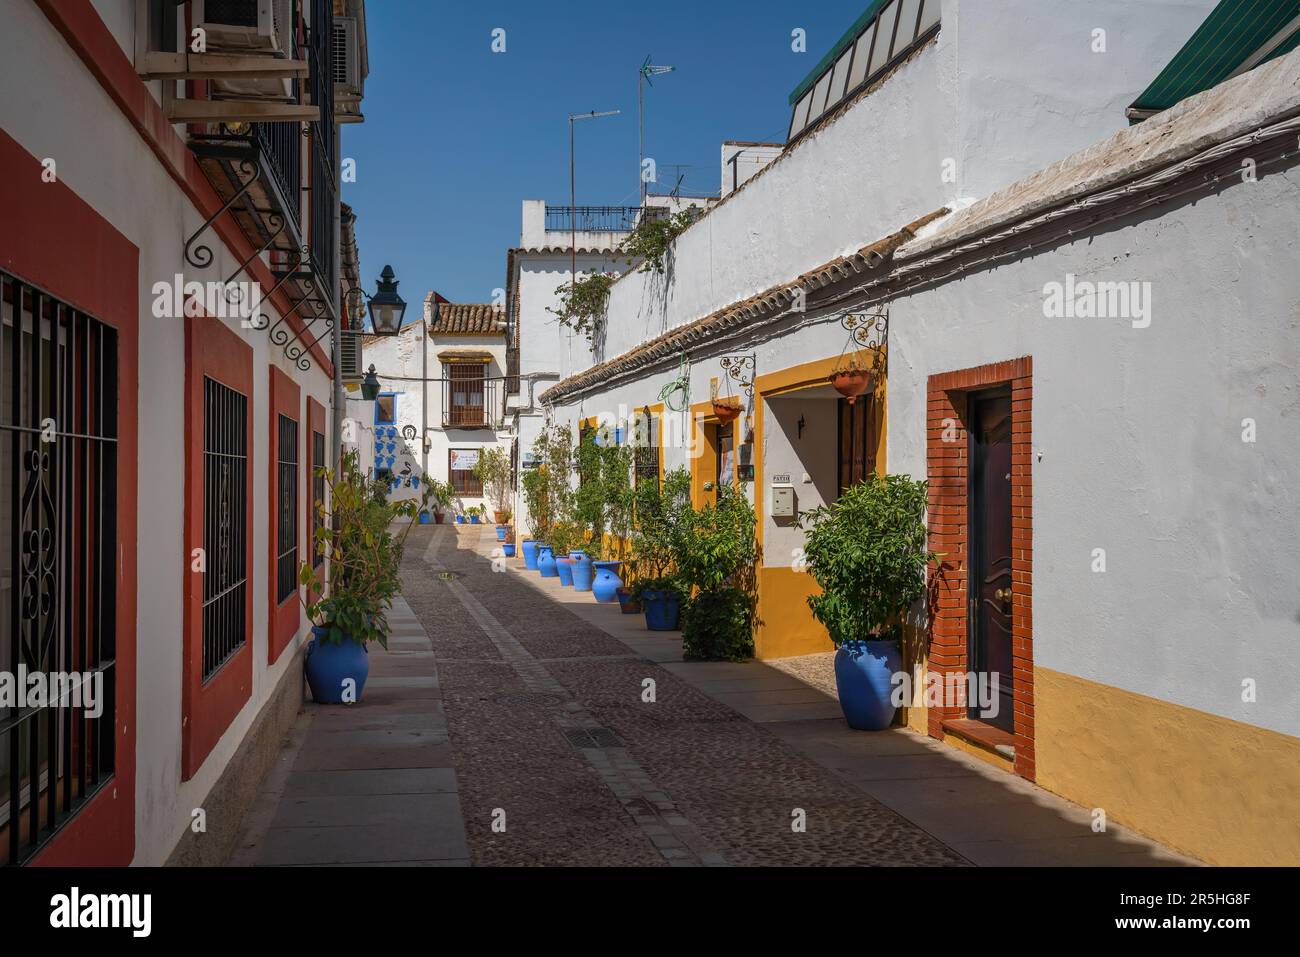 Rues de San Basilio - Cordoue, Andalousie, Espagne Banque D'Images